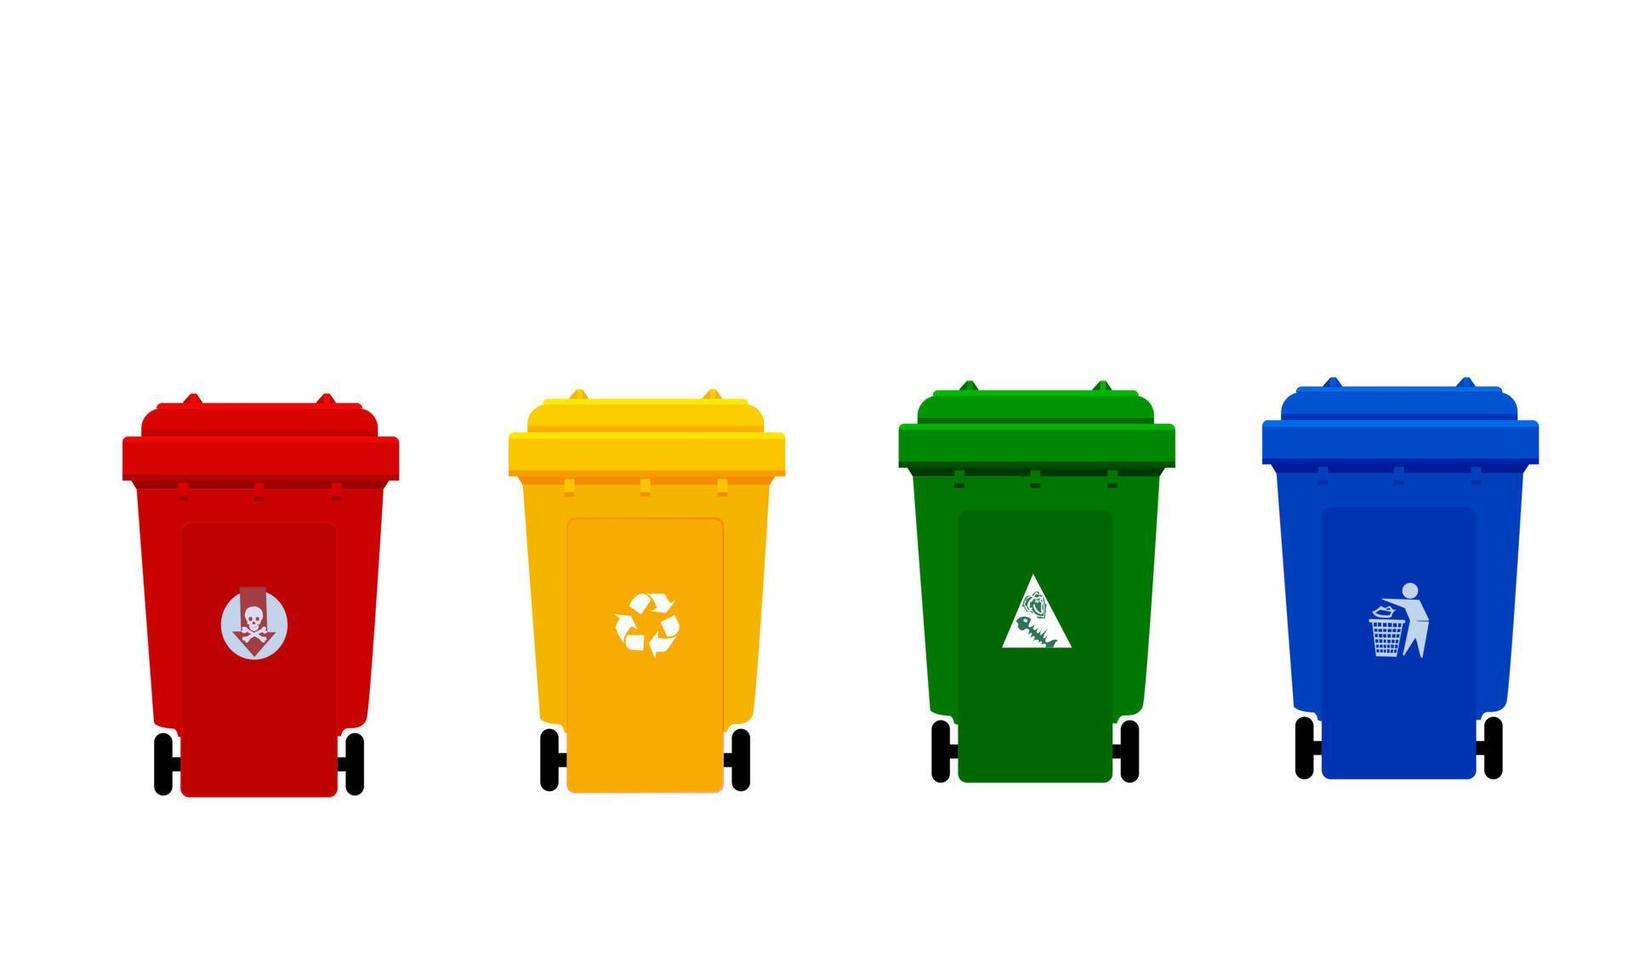 cubo de basura de plástico, cubo de basura de cuatro colores rojo, amarillo, verde y azul con símbolo, la imagen frontal de los cuatro cubos de basura de plástico, vector